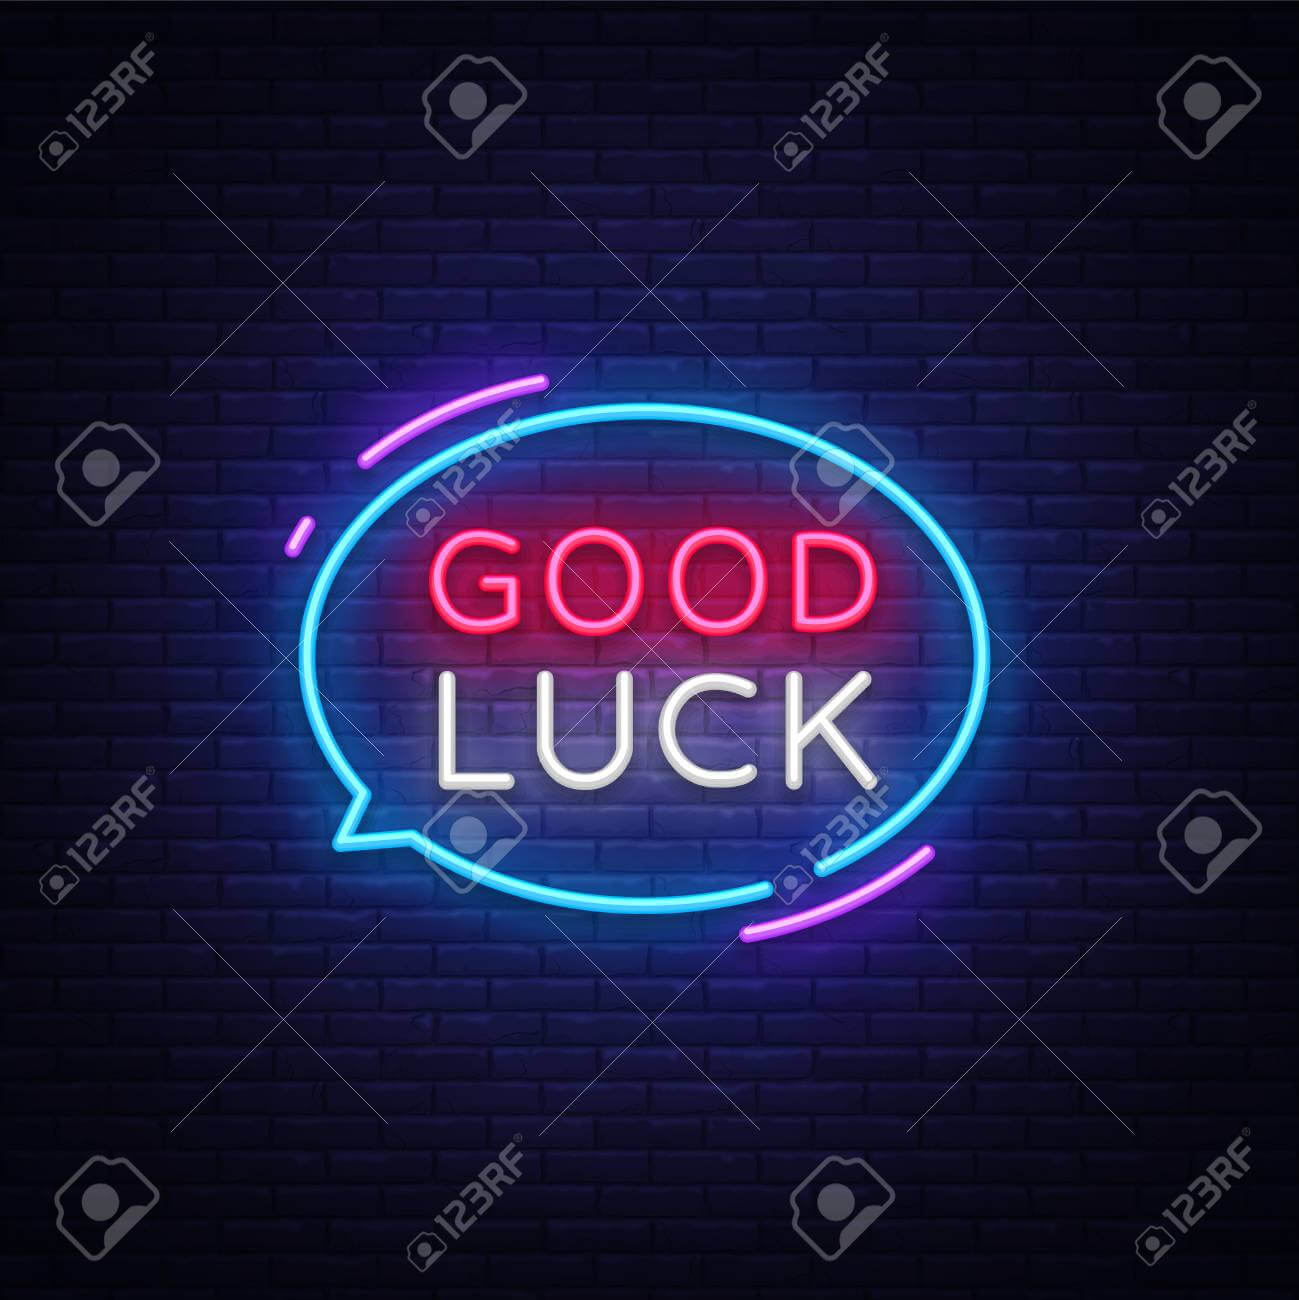 Good Luck Neon Text Vector. Good Luck Neon Sign, Design Template,.. Inside Good Luck Banner Template